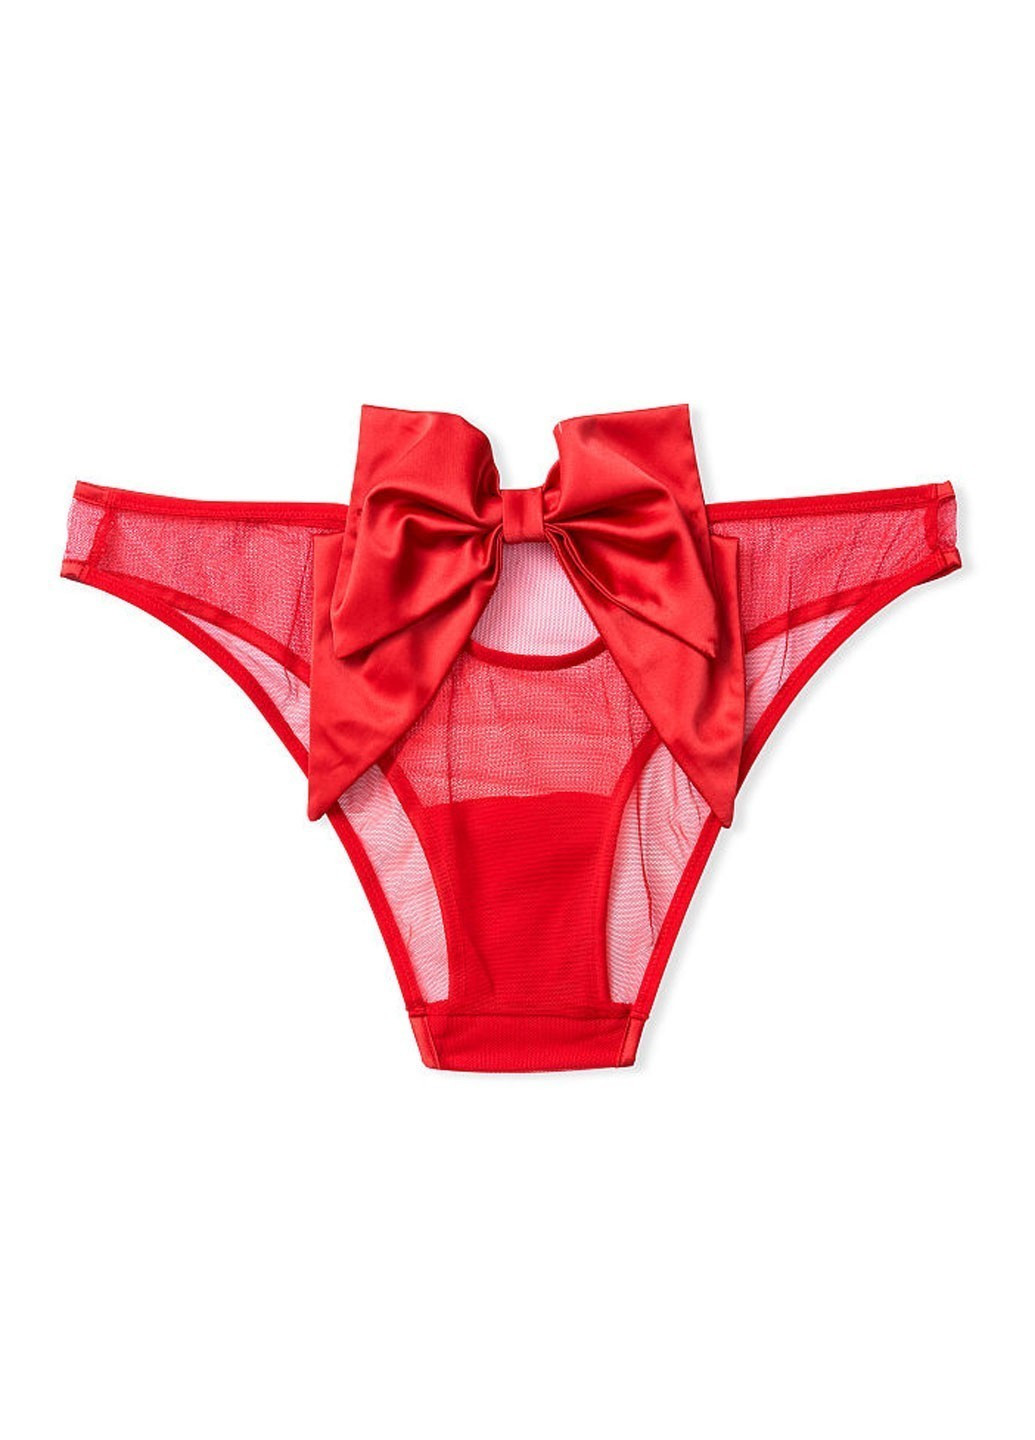 Червоний демісезонний комплект (бюстгальтер, трусики) Victoria's Secret